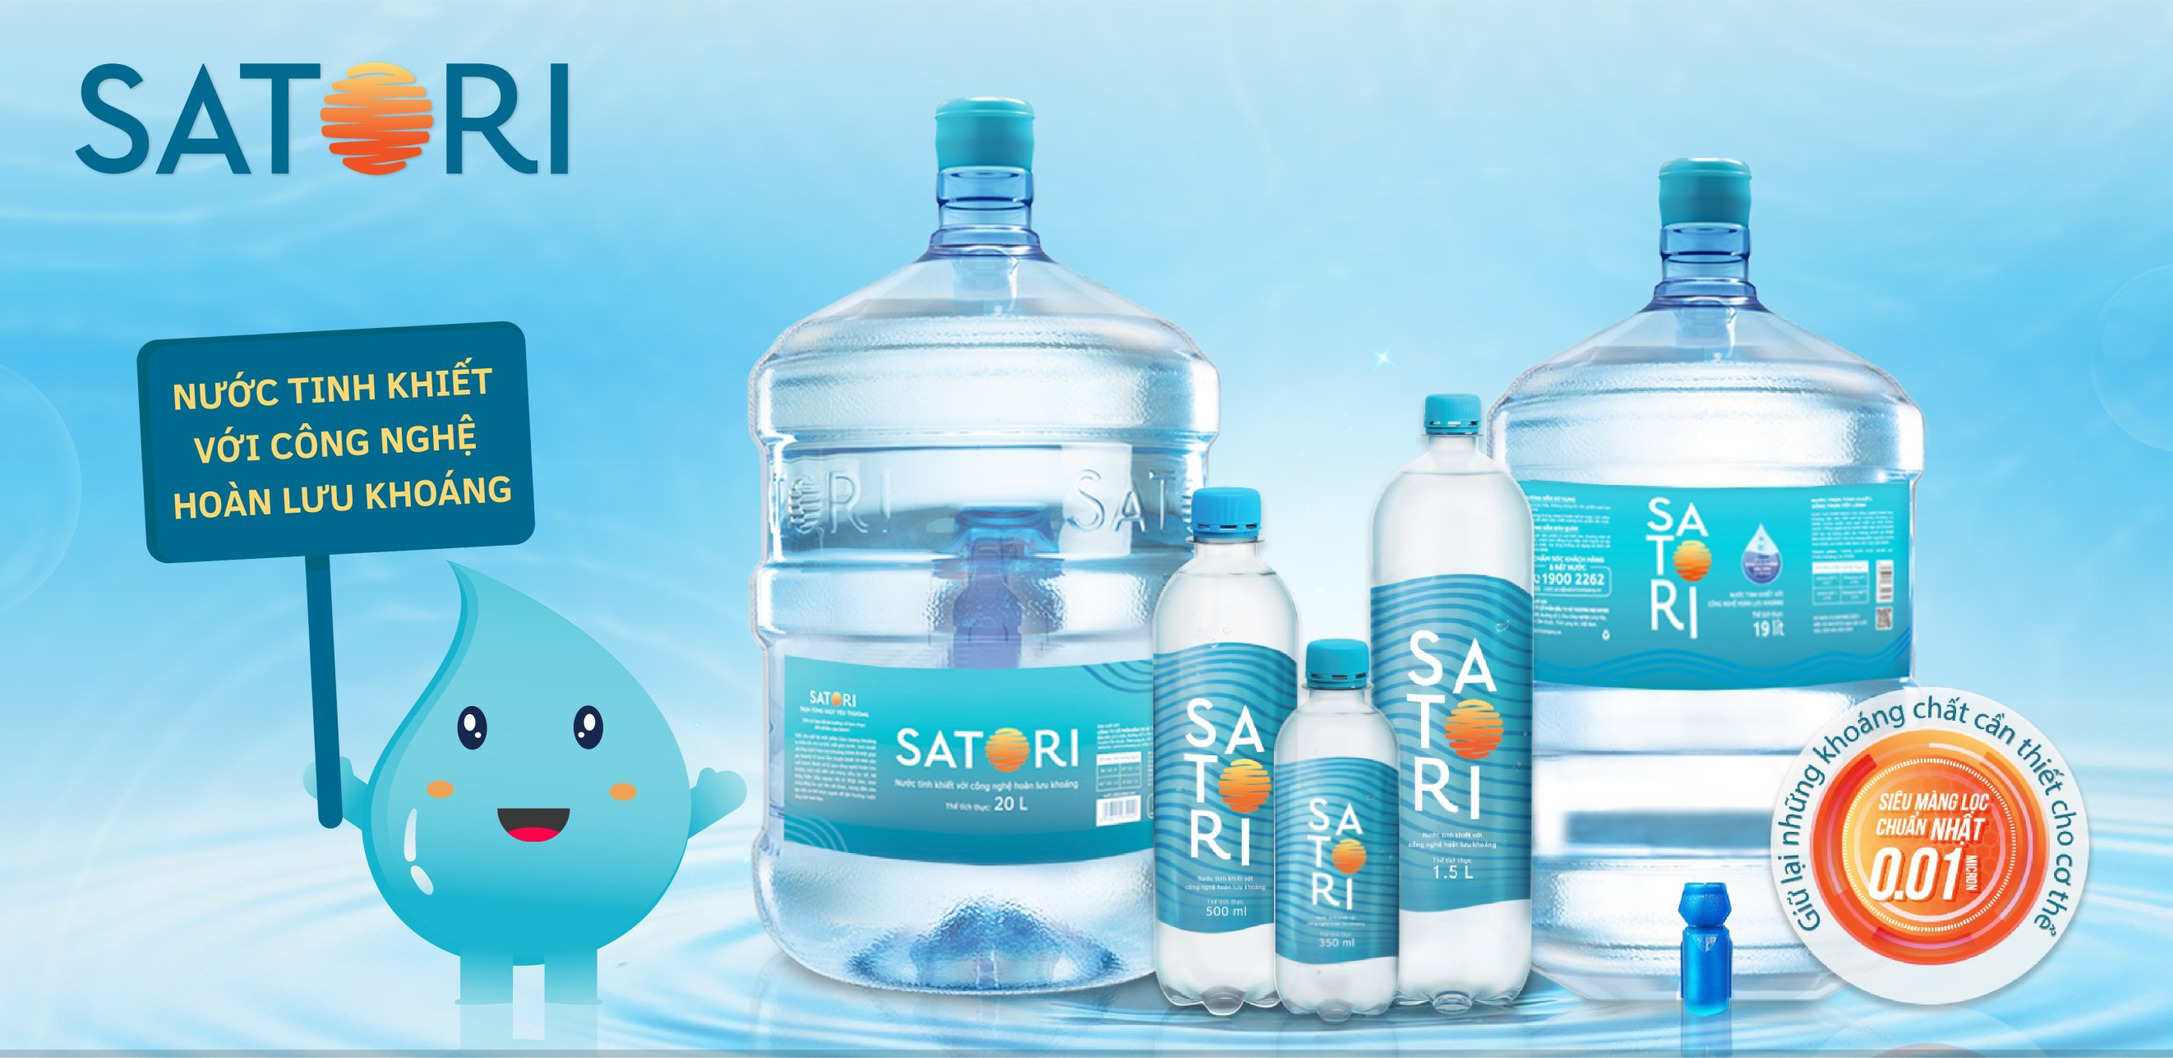 Nước Satori - Nước tinh khiết công nghệ hoàn lưu khoáng chất lượng cao